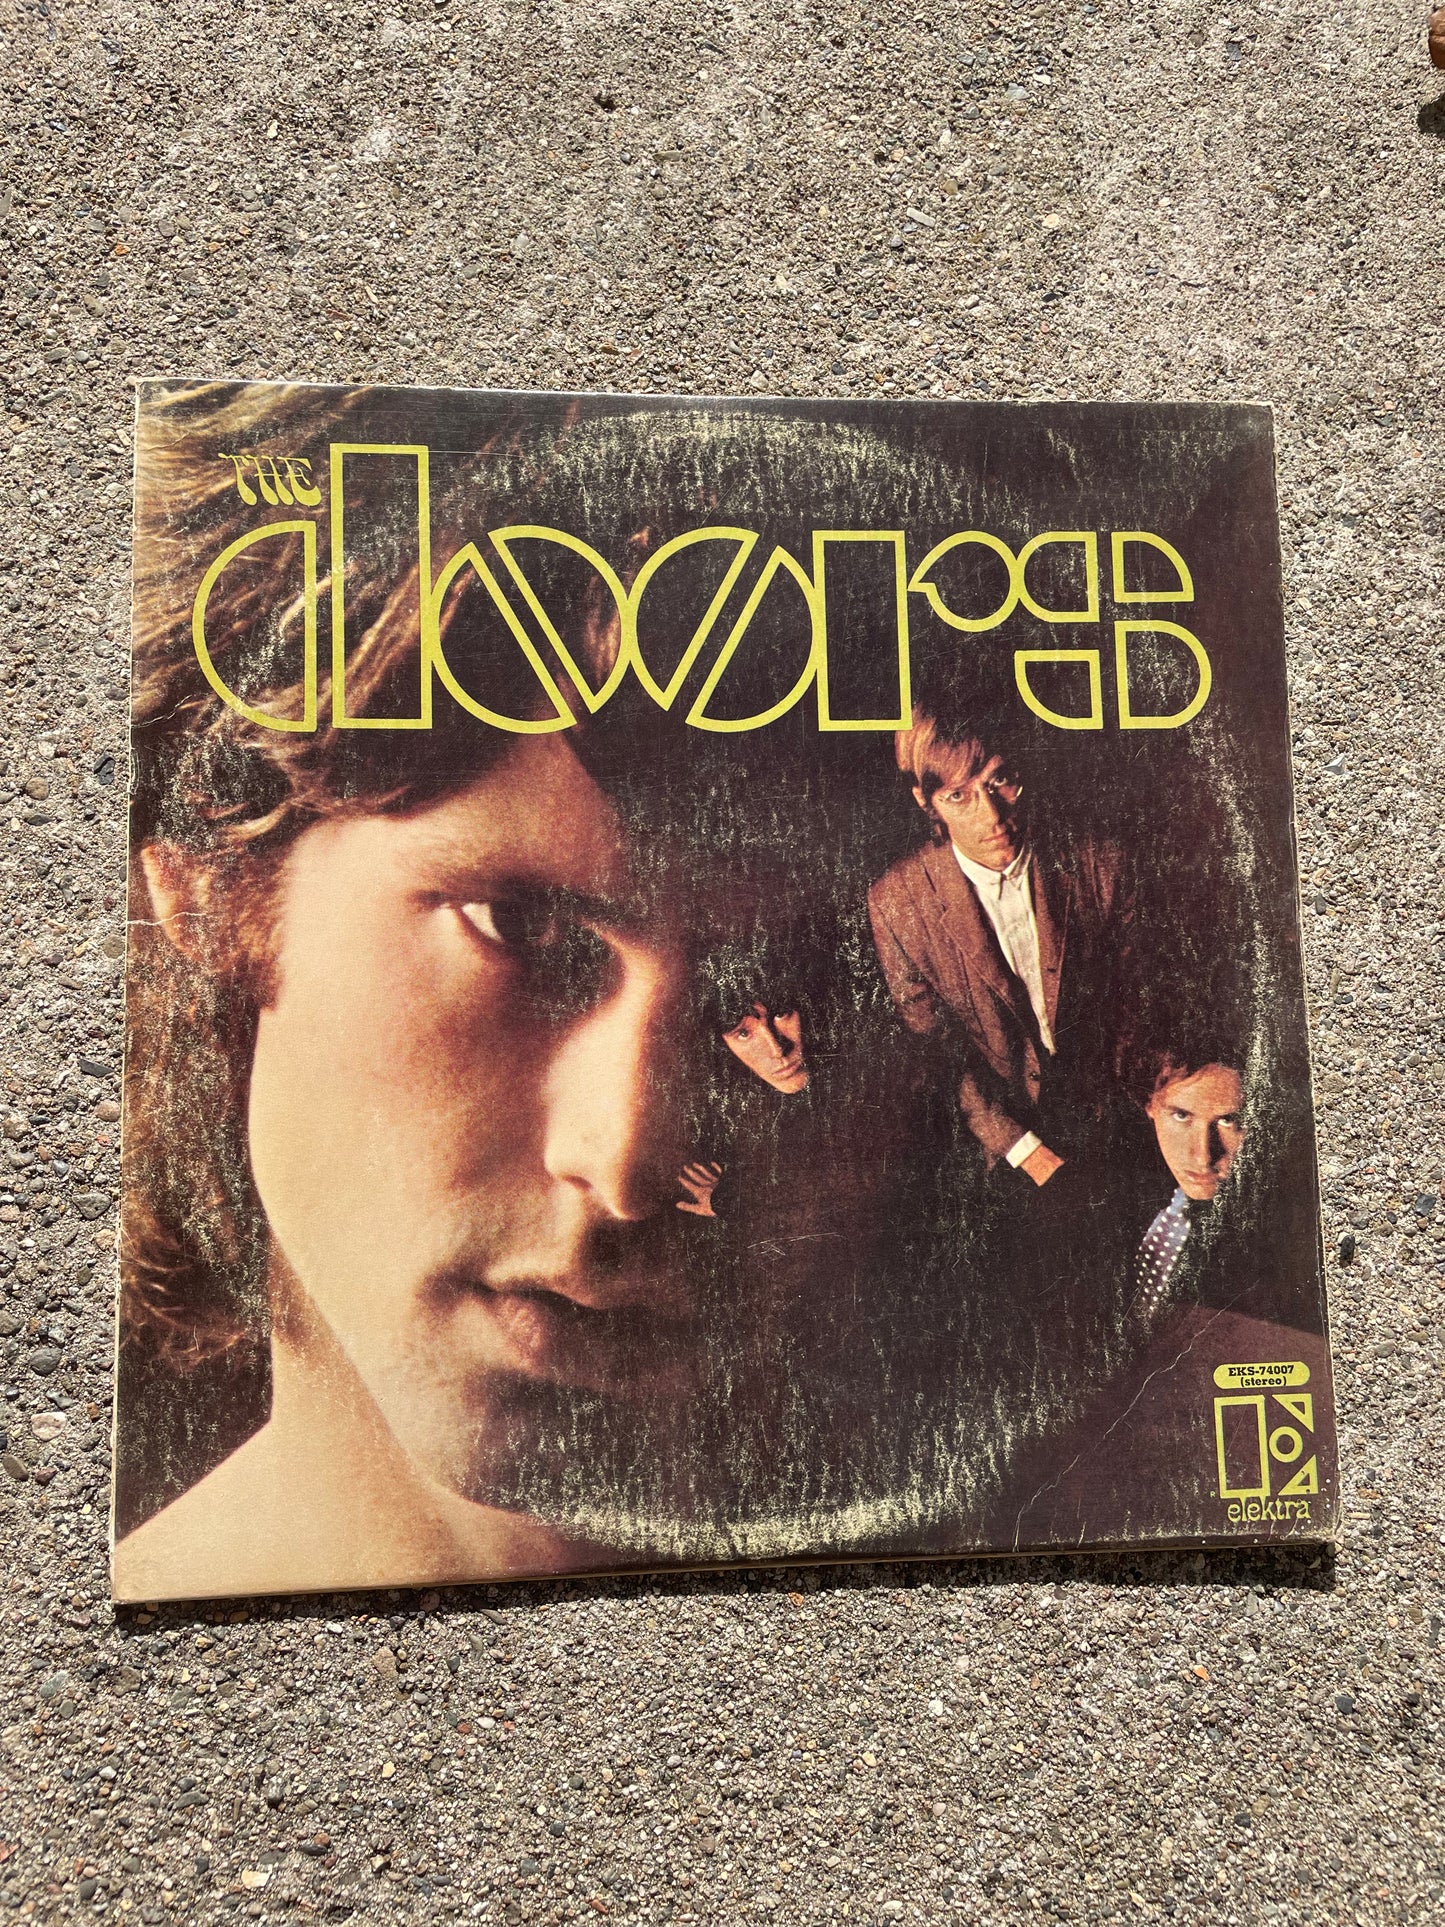 LP G G 1967 The Doors Elektra Records Vintage Classic Rock Vinyl Record Album